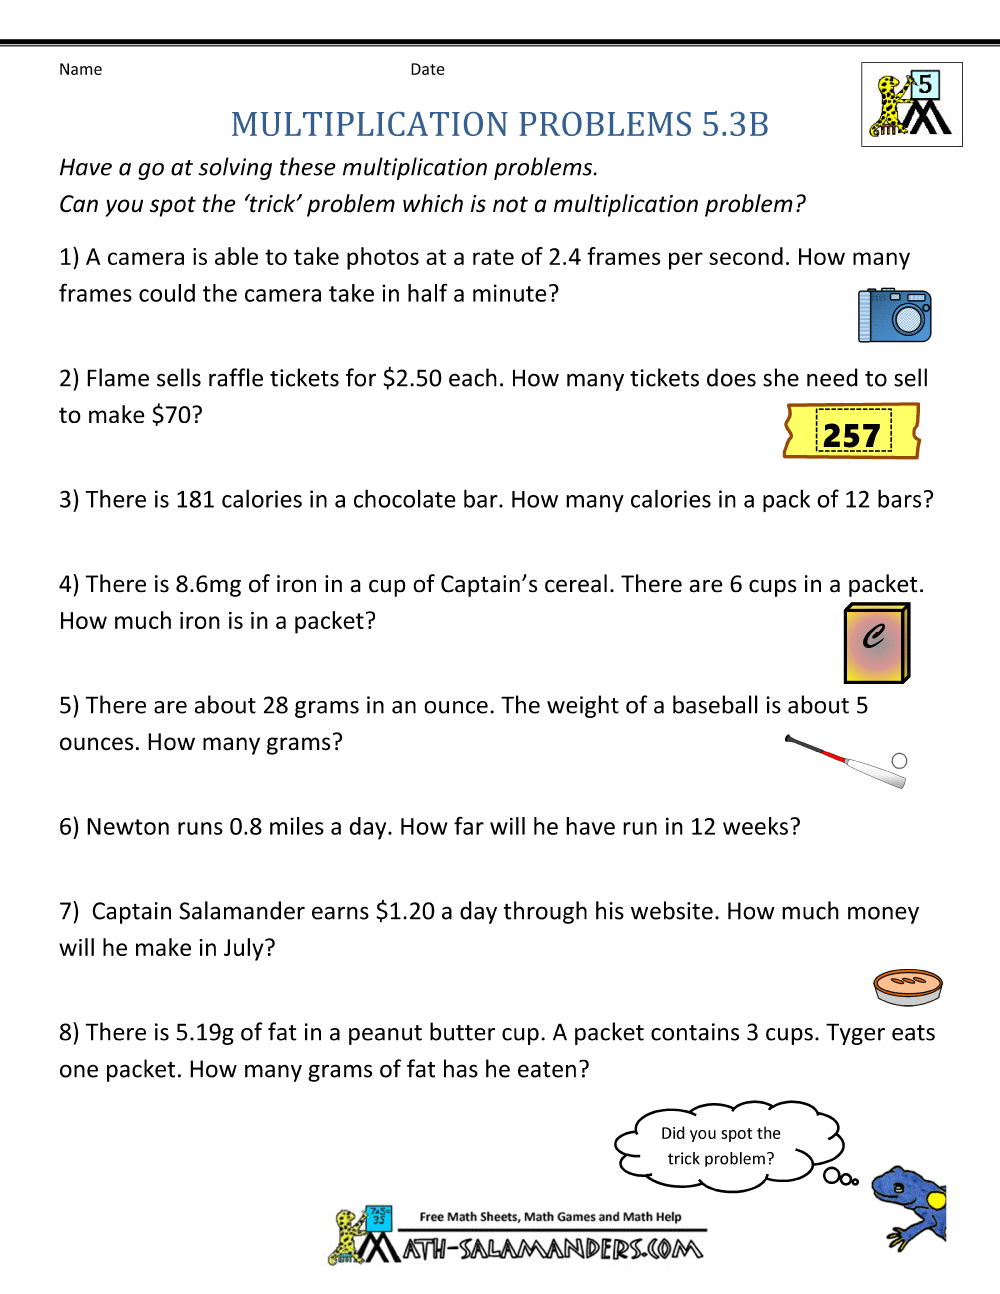 grade 5 problem solving examples